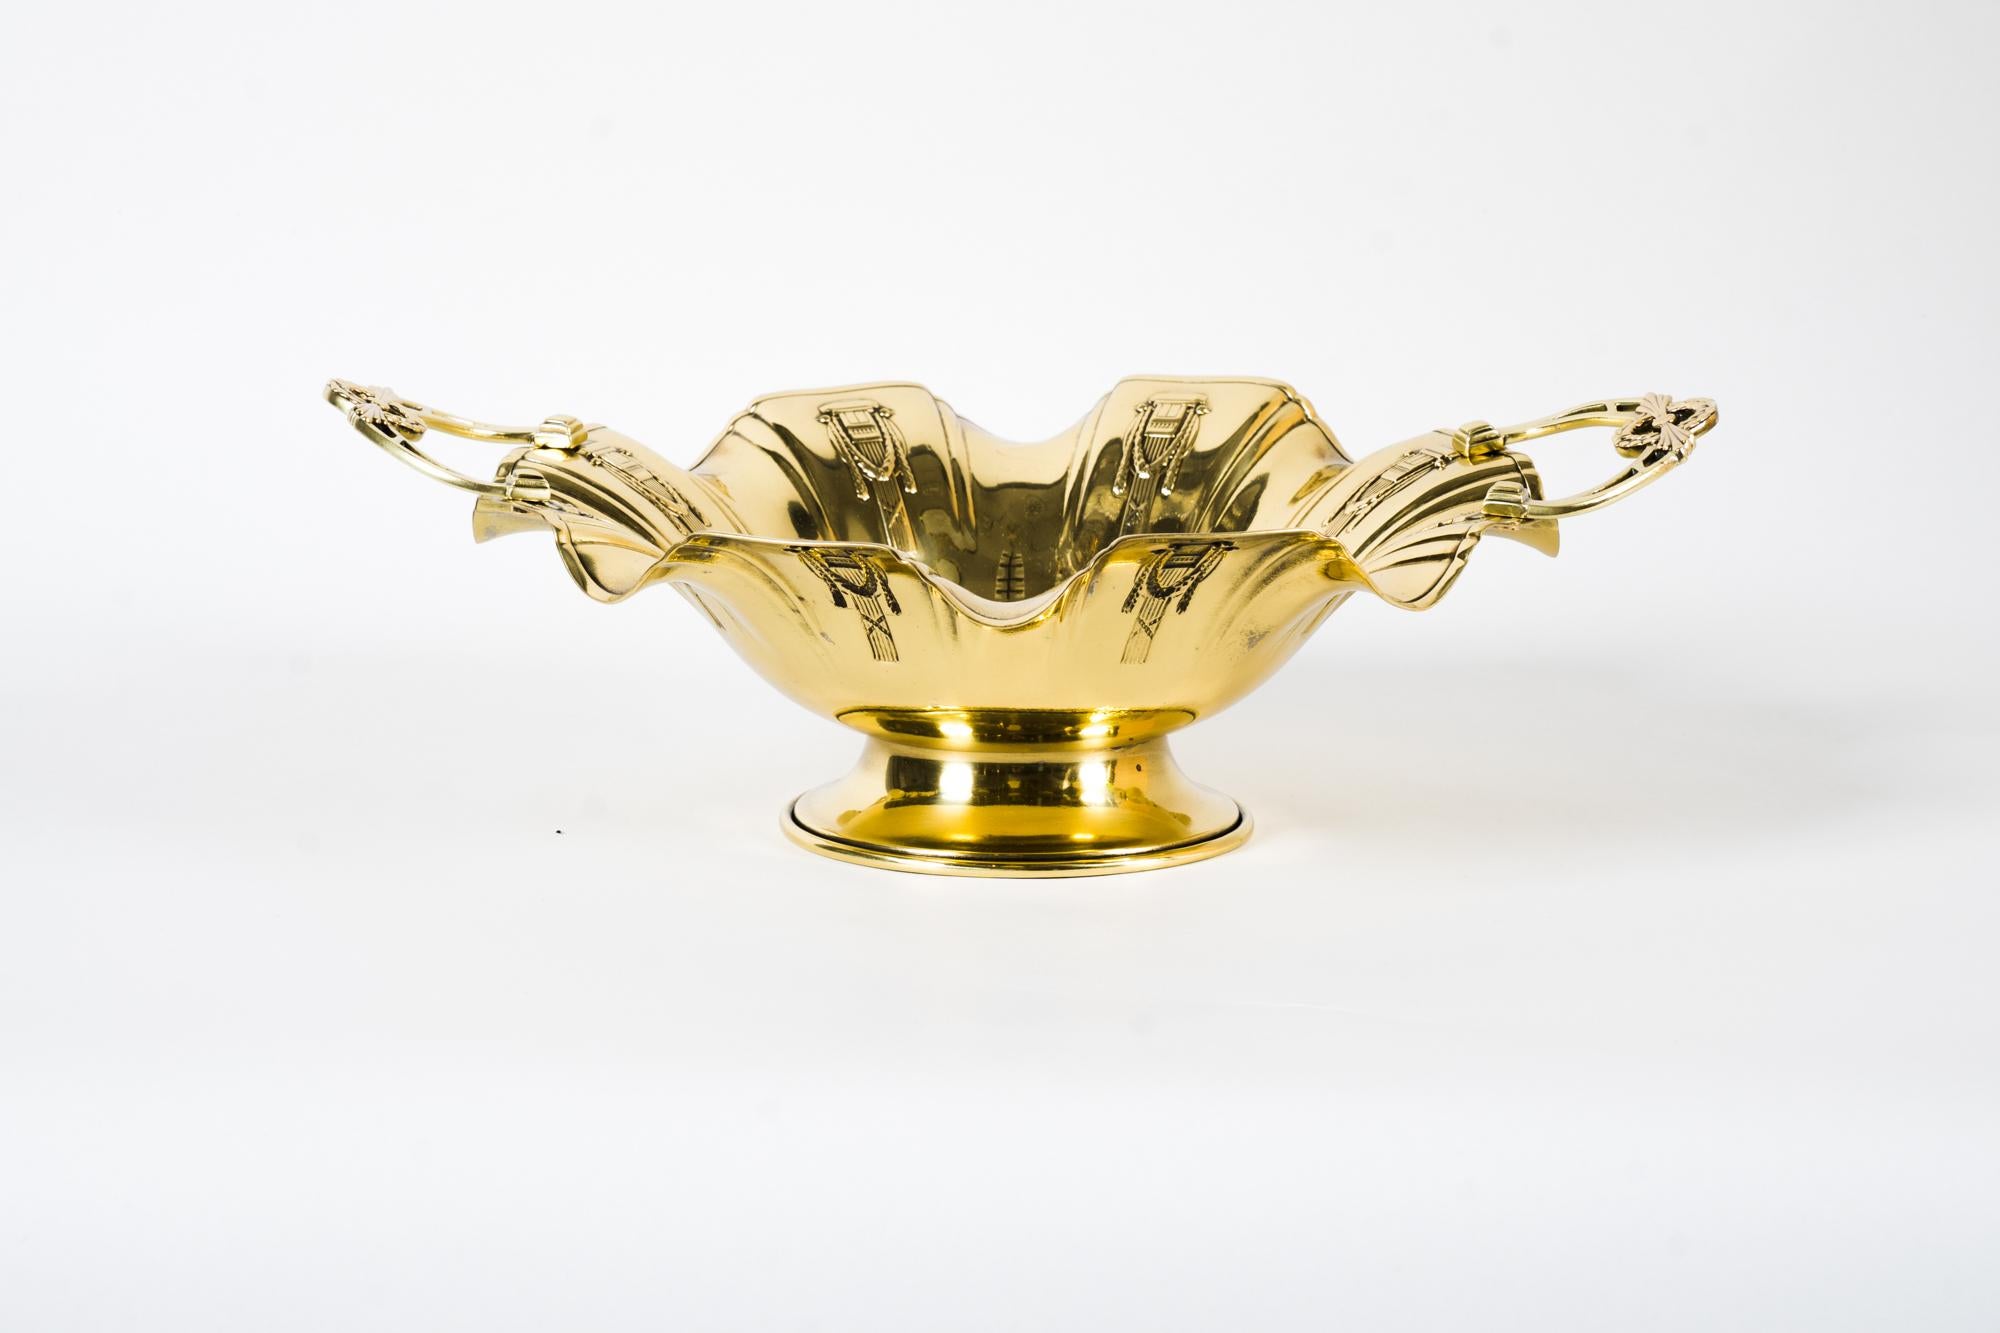 Jugendstil brass centerpiece, around 1908s
Polished and stove enameled.